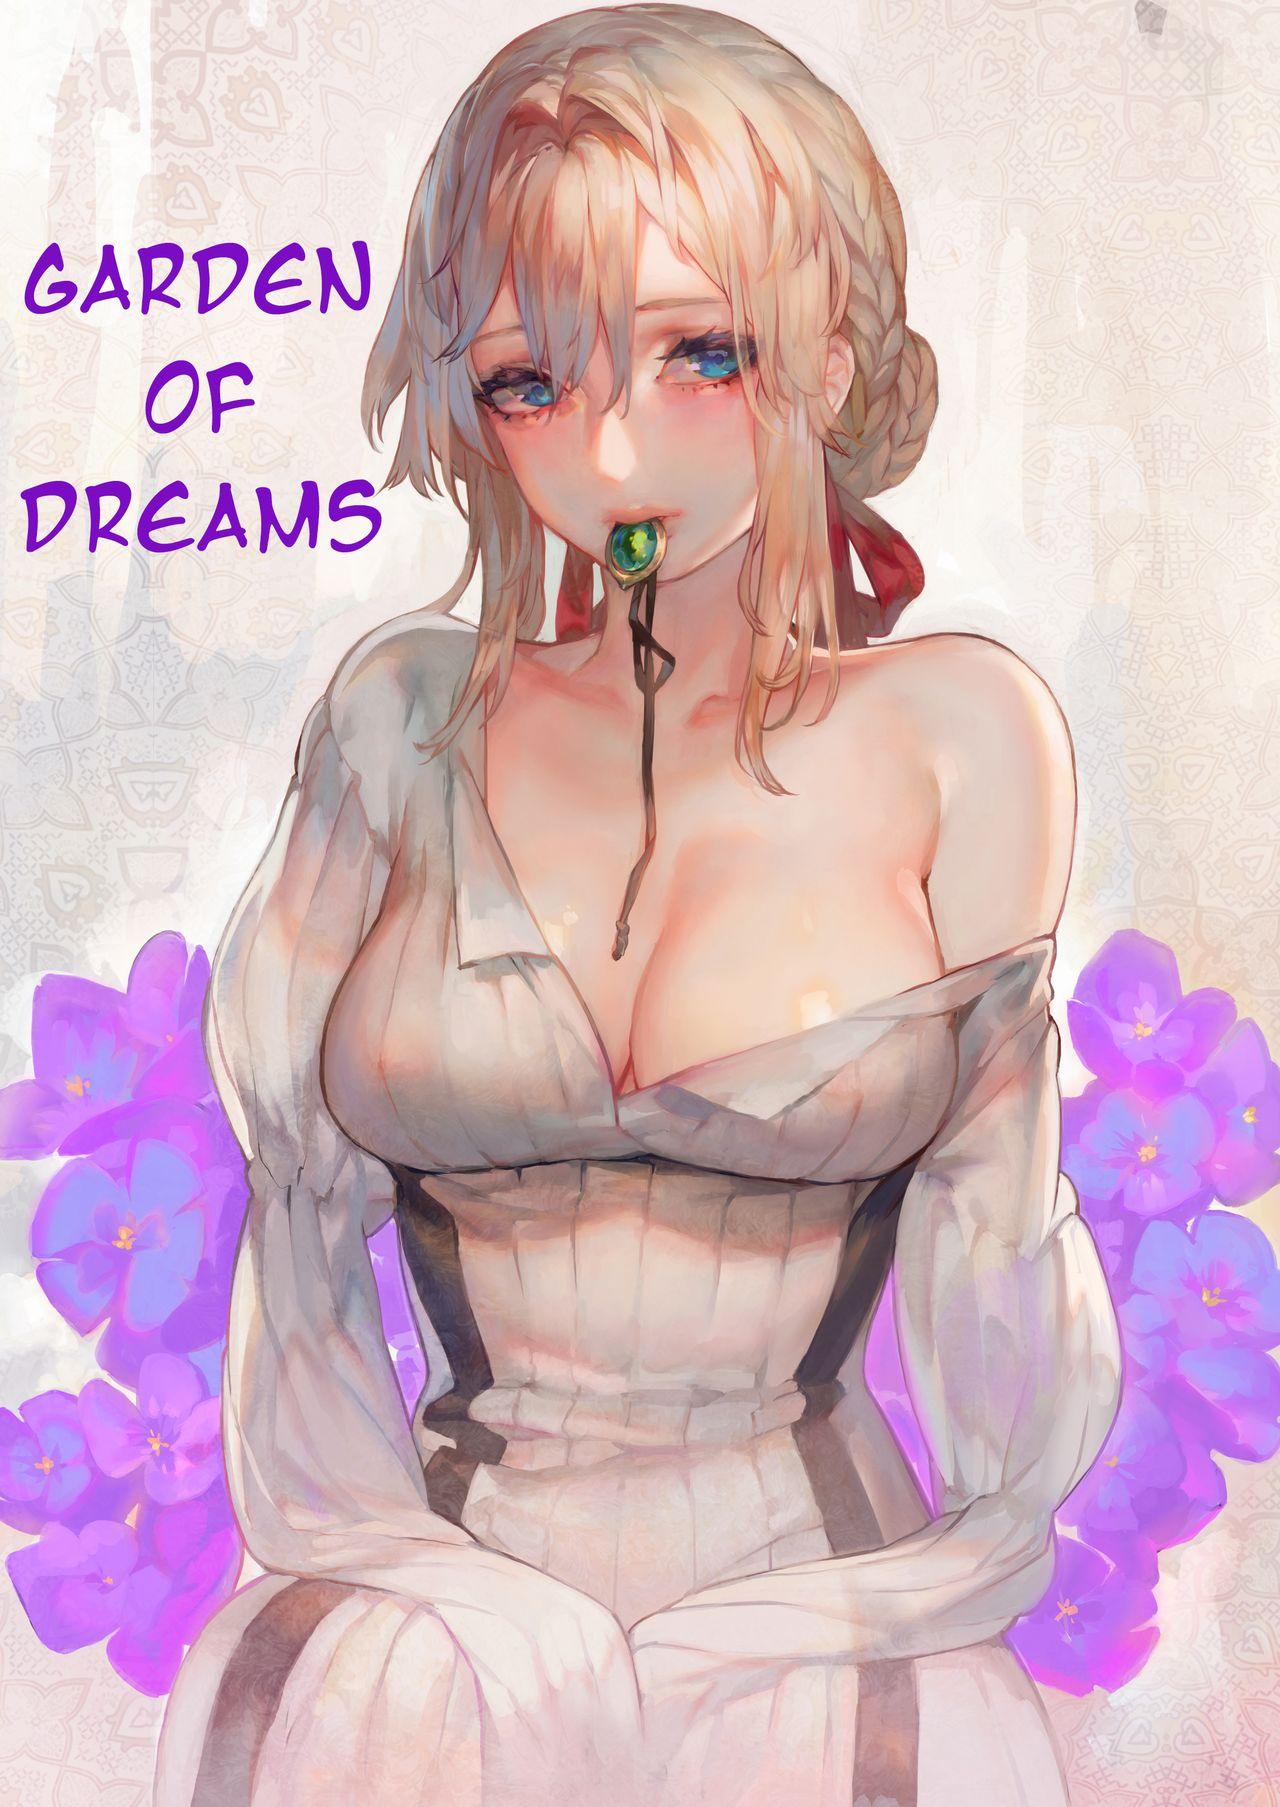 Sentones Dreaming Garden - Violet evergarden Peruana - Picture 1